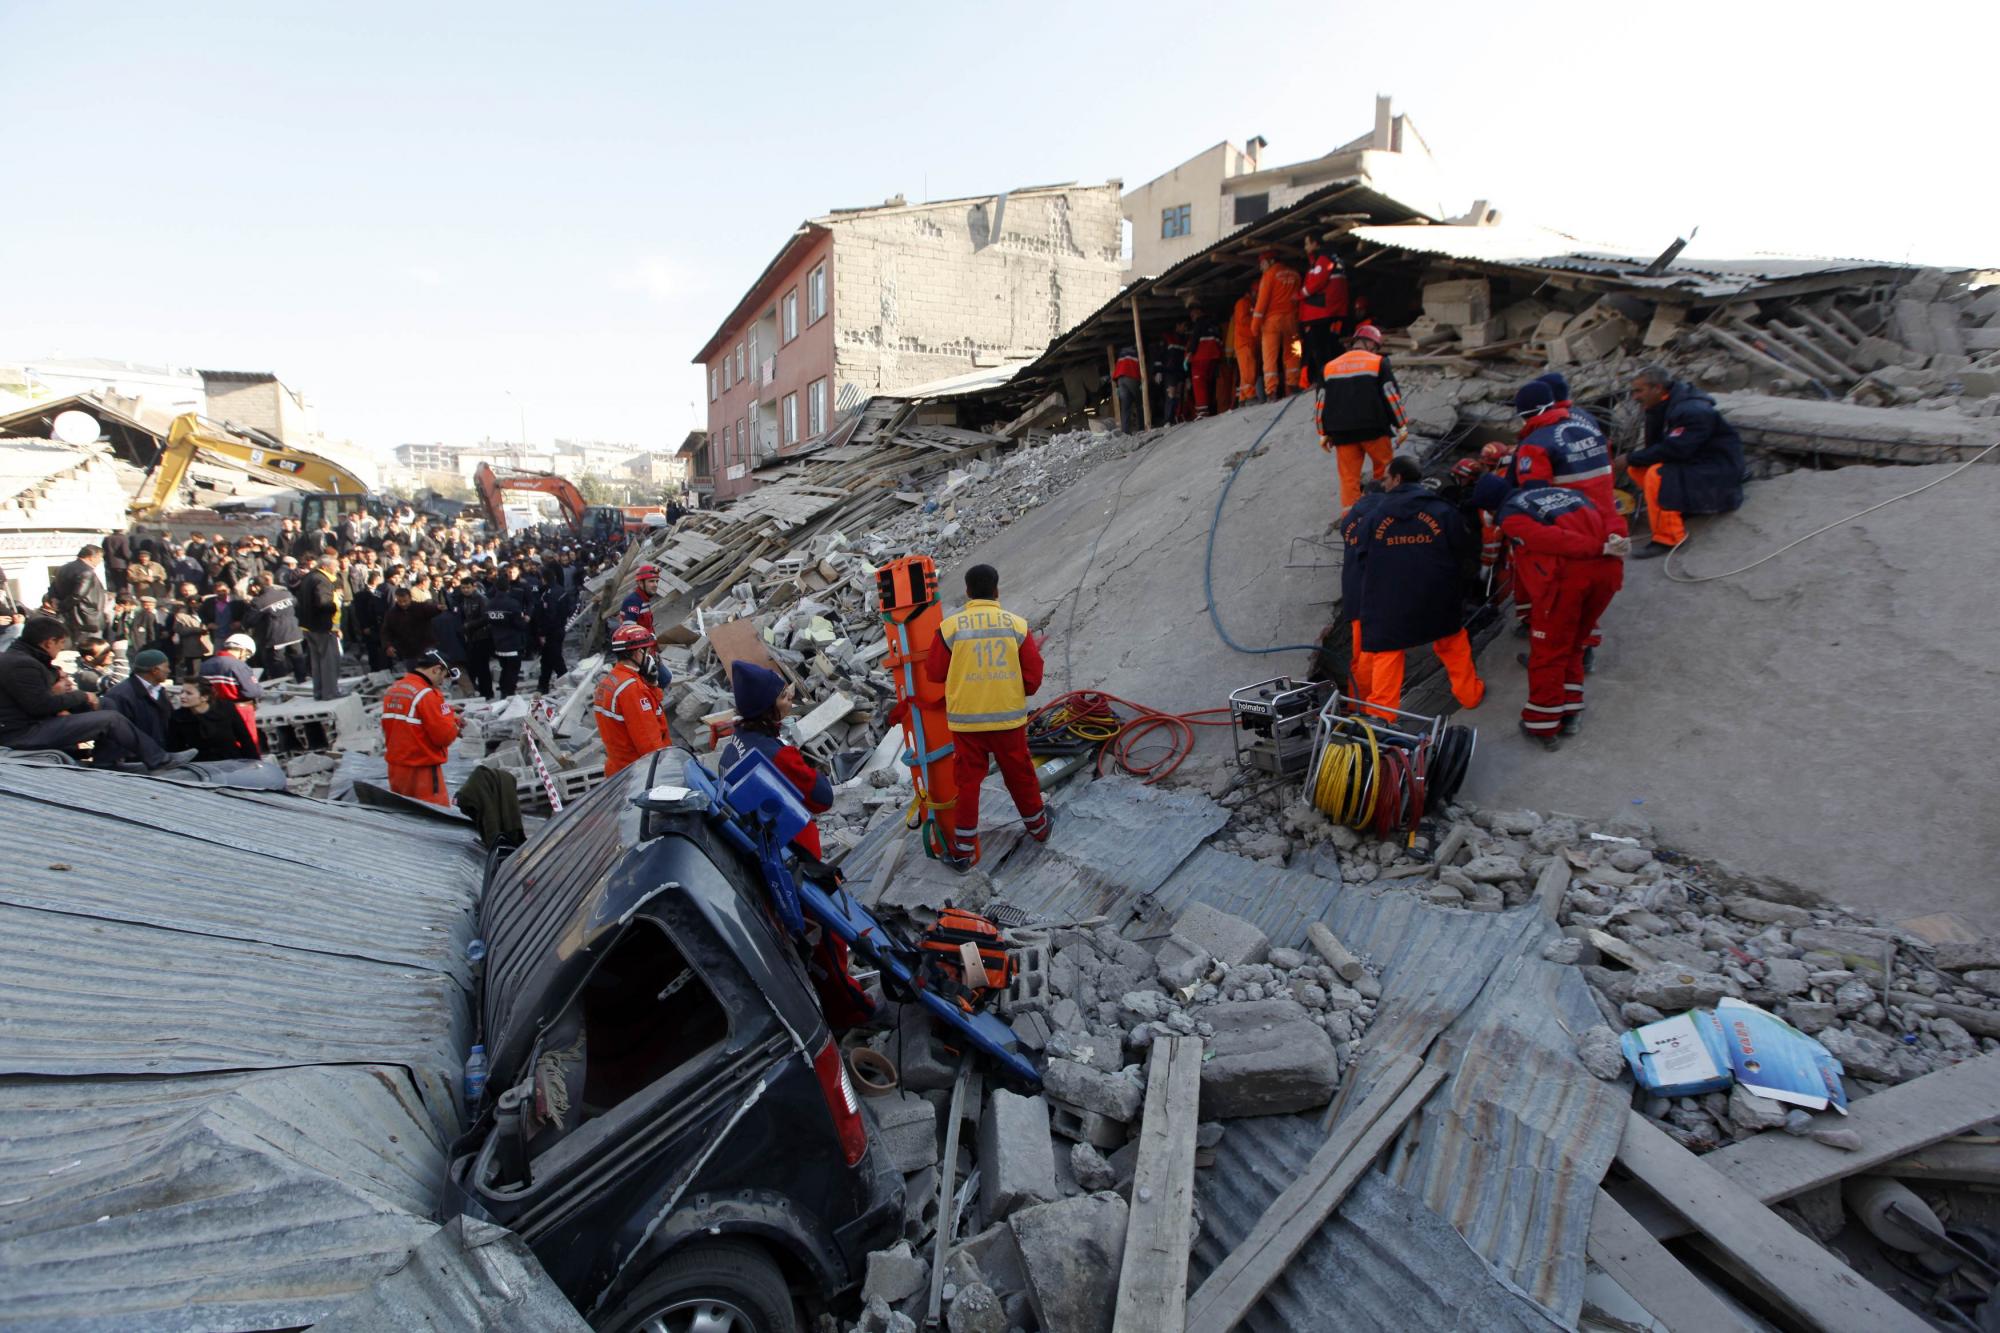 7.3级强震袭击土耳其 200余人遇难上千建筑坍塌